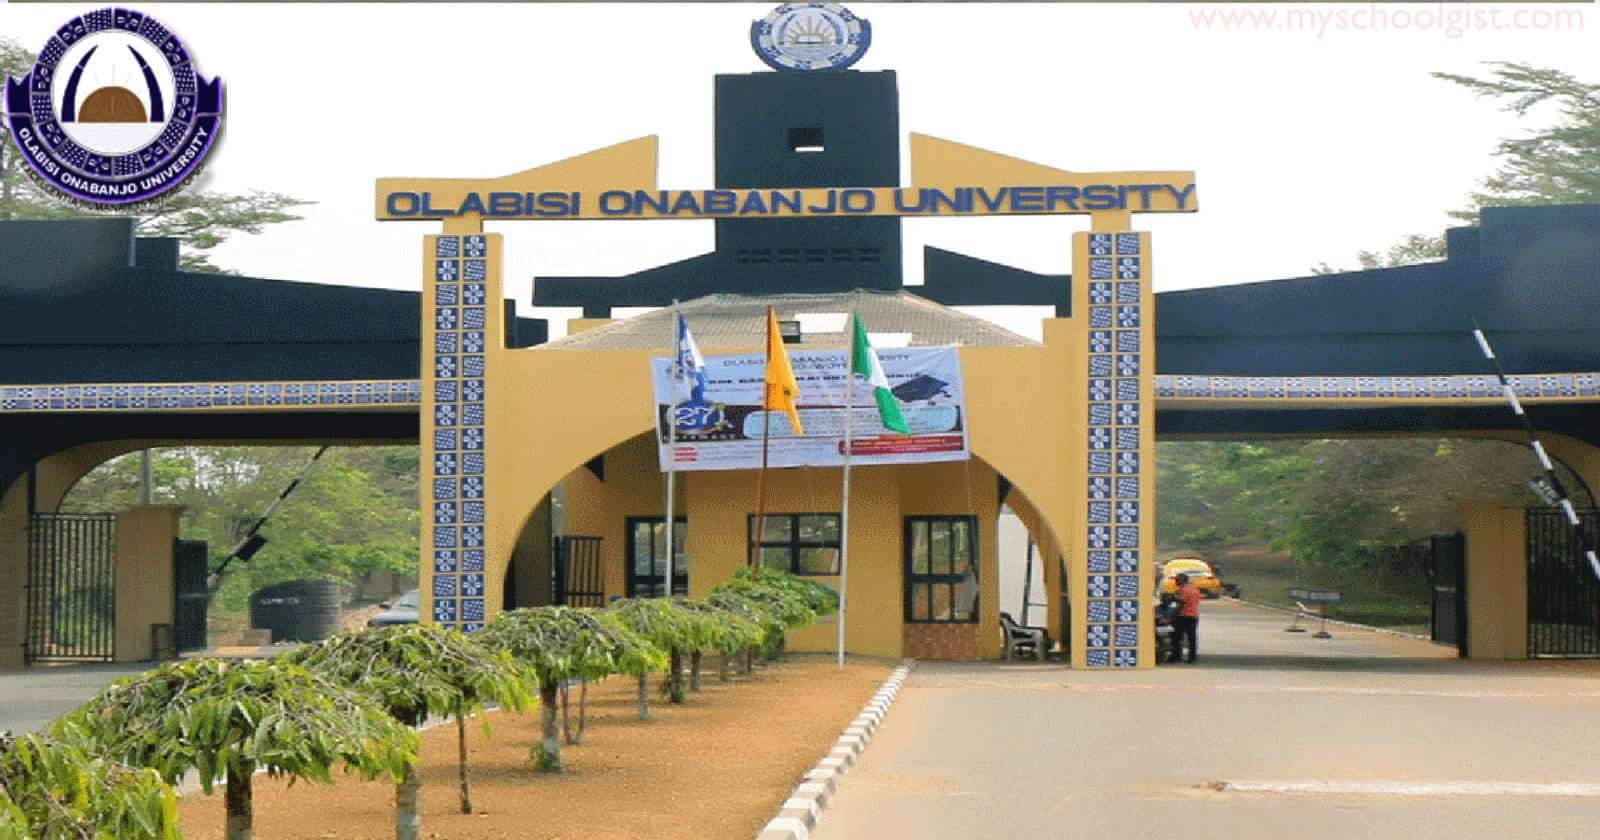 Graduation ceremony for Olabisi Onabanjo University (OOU)